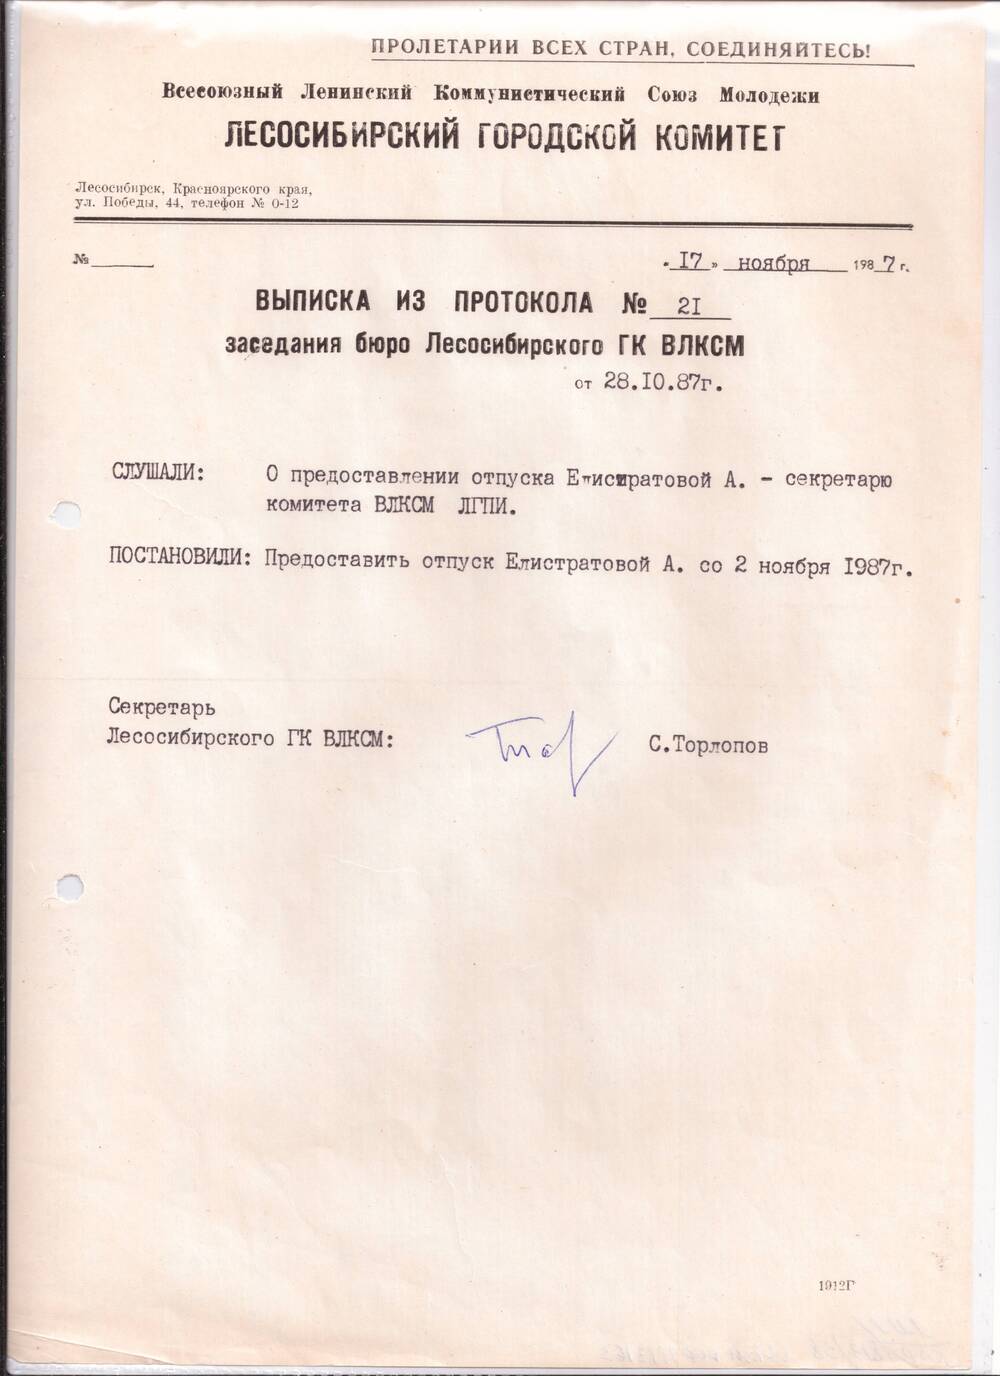 Выписка из протокола №21 от 27.11.1987г о предоставлении отпуска Елистратовой А.